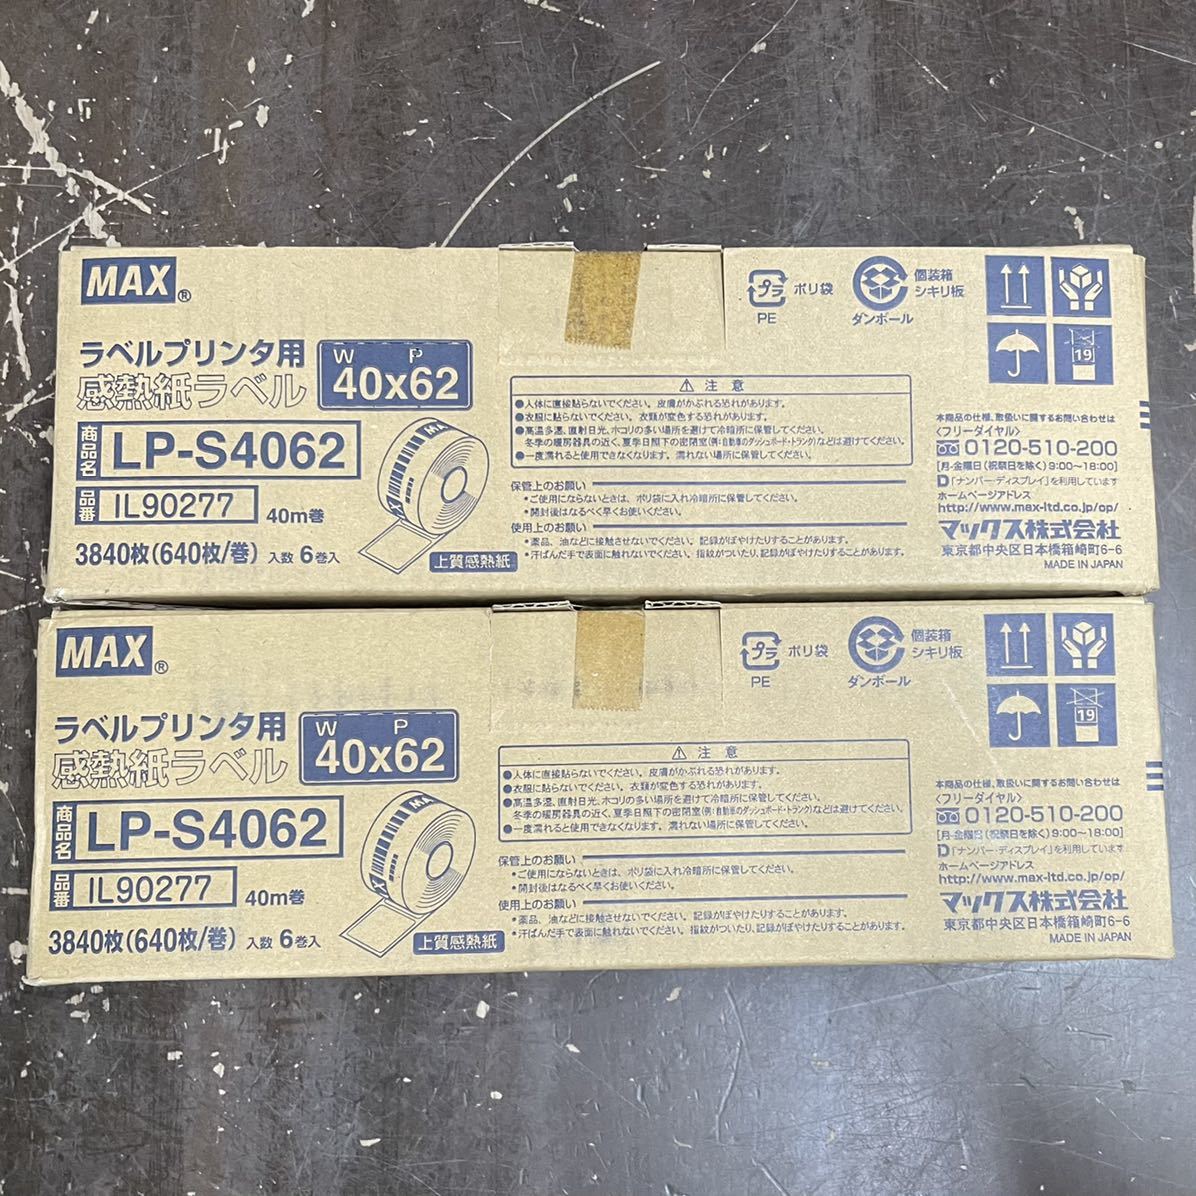 B】 マックス ラベルプリンタ用 感熱紙ラベル LP-S4062 上質感熱紙 12